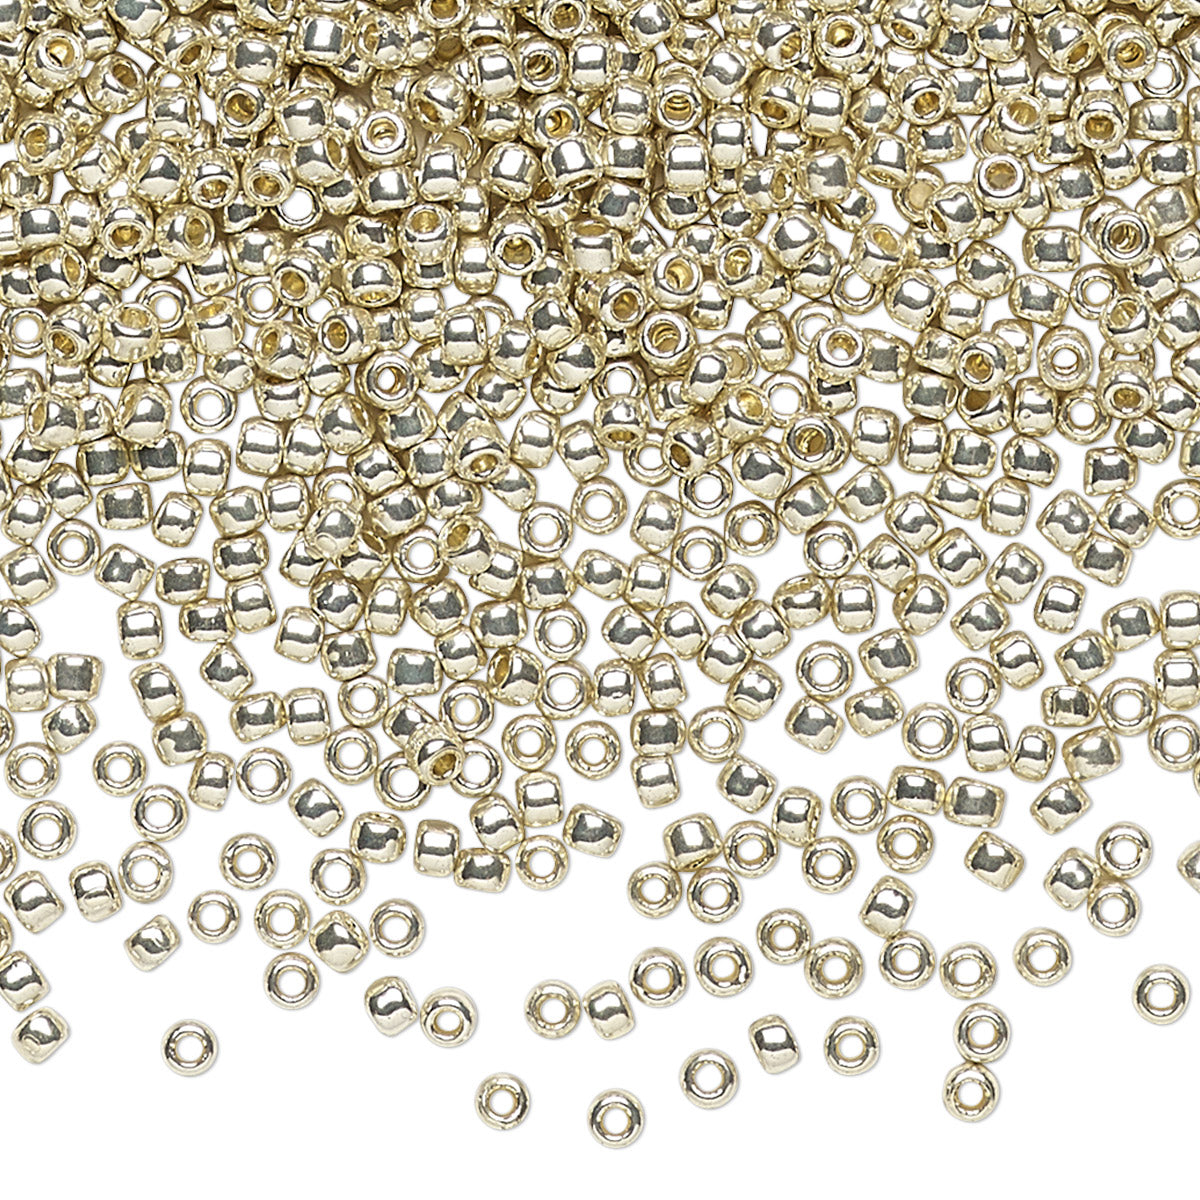 TOHO Seed Beads